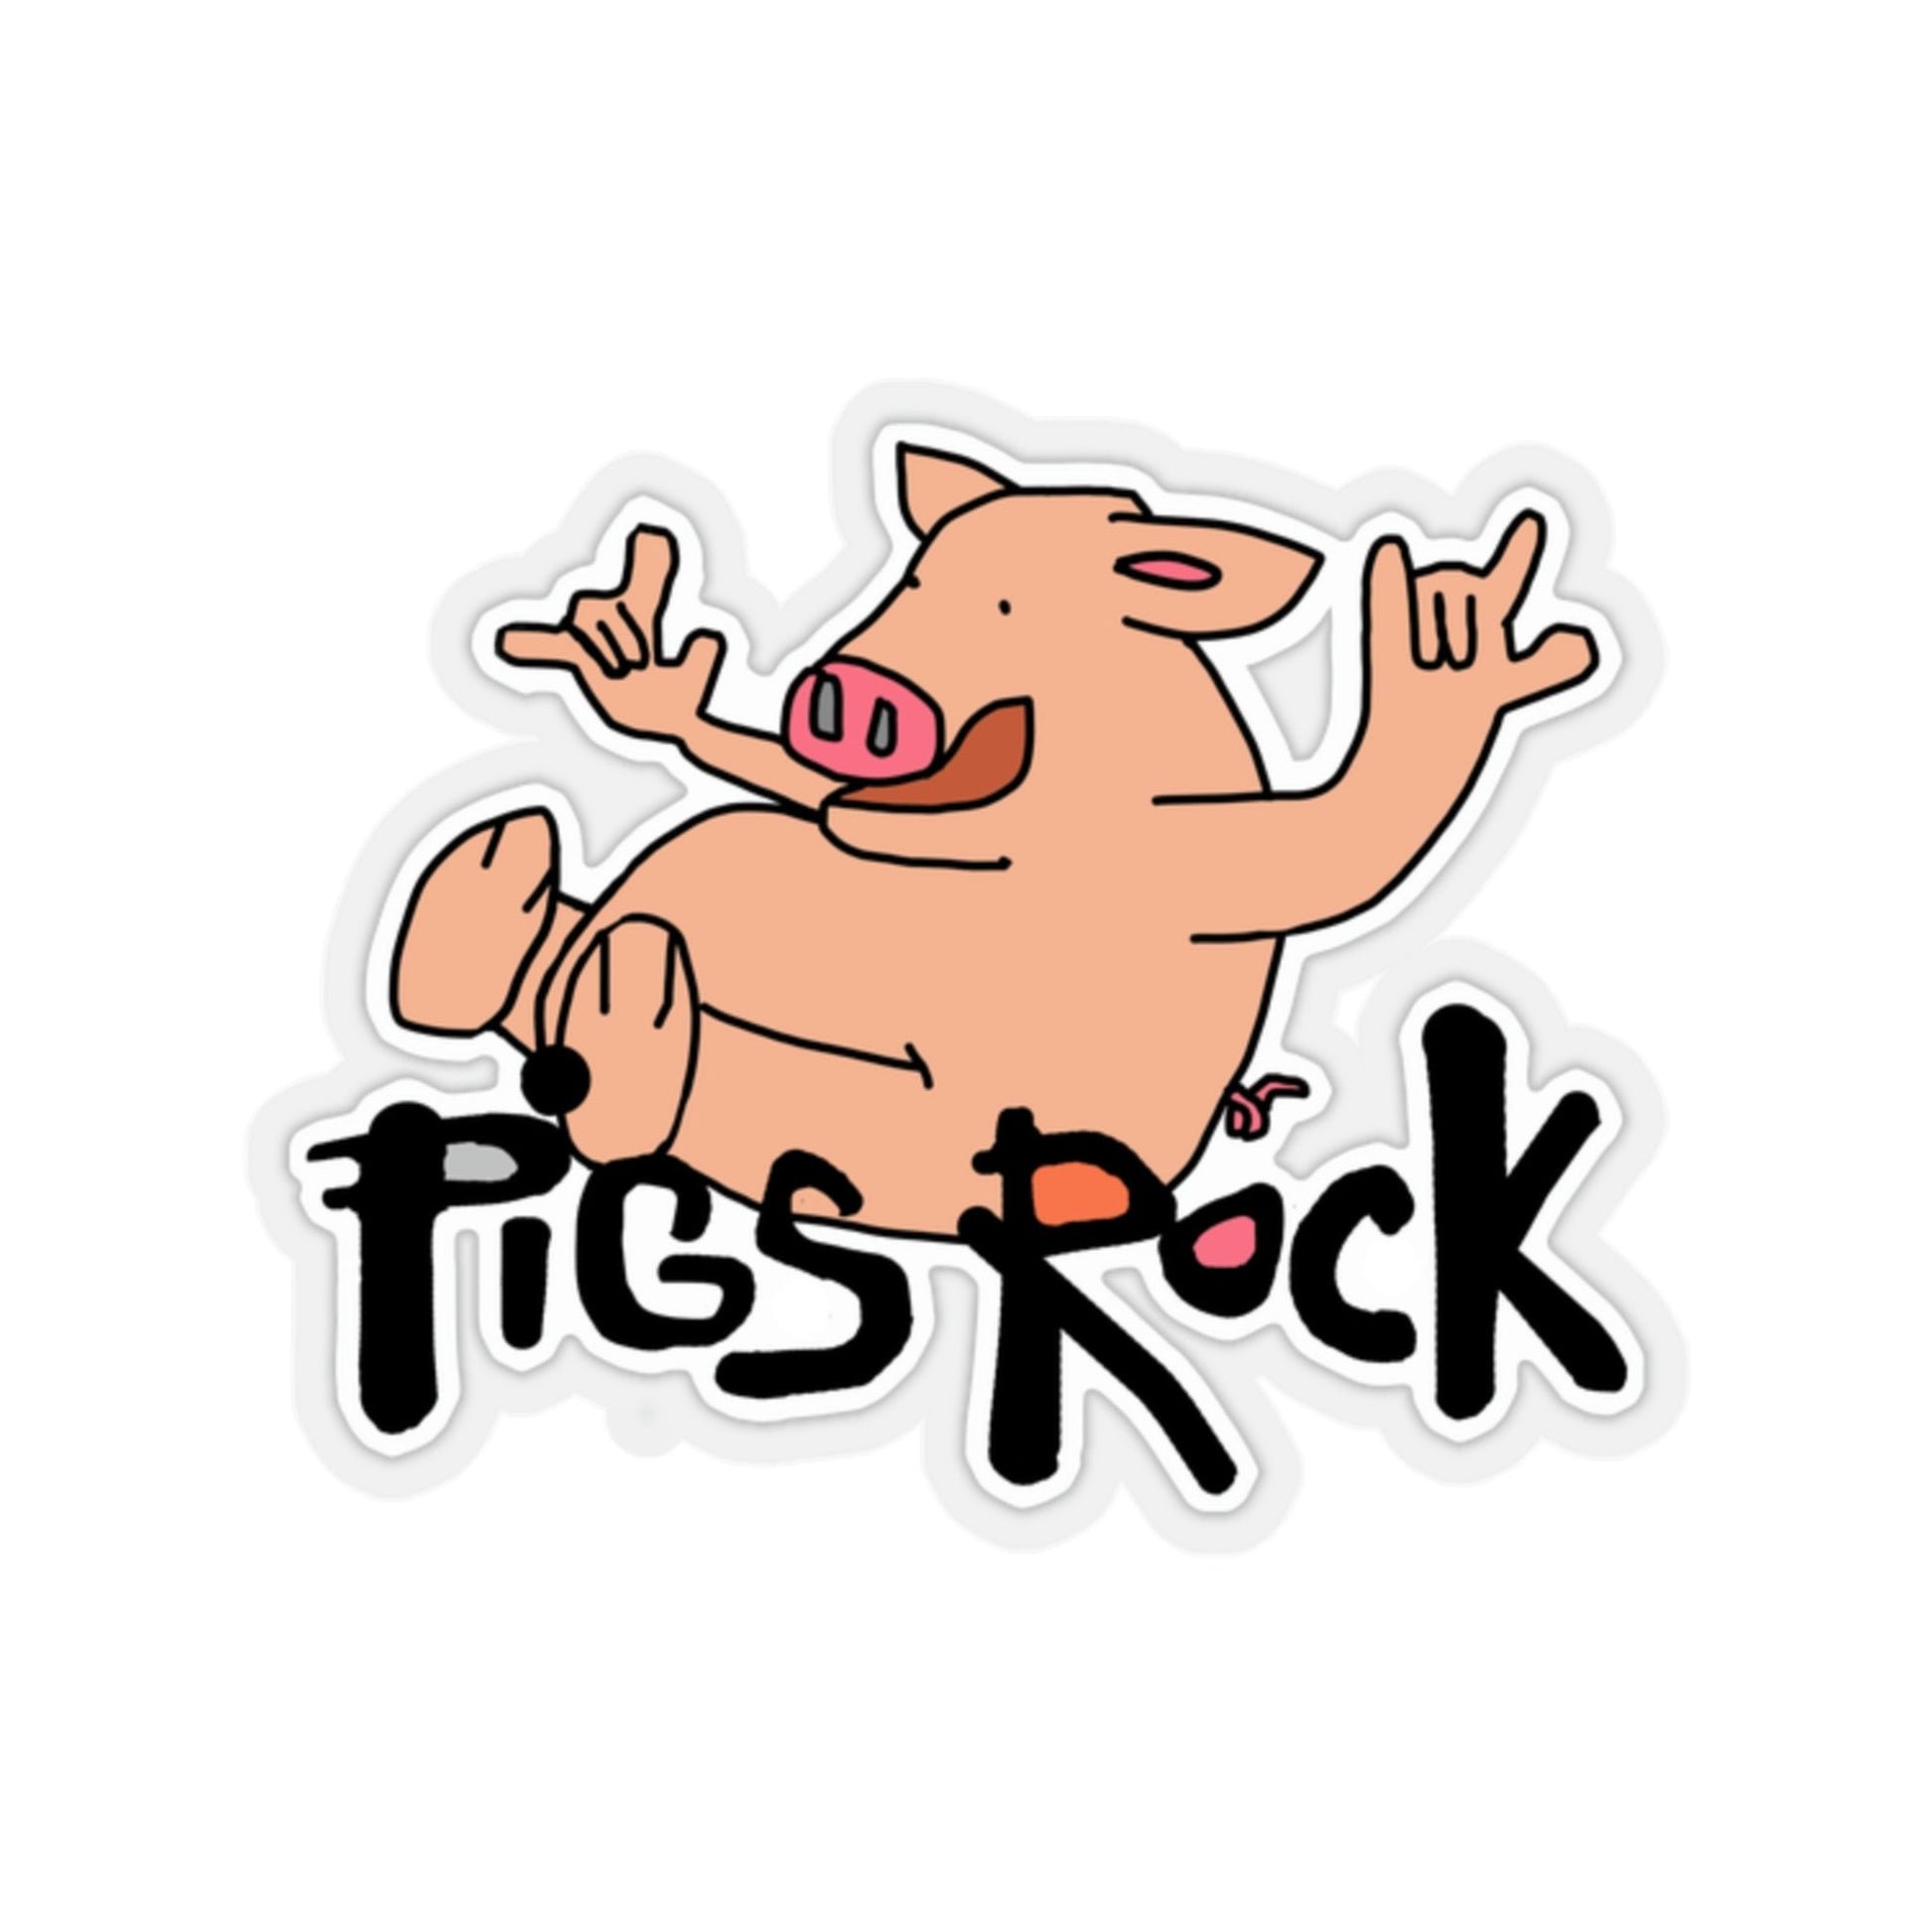 Pigs Rock Kiss-Cut Stickers